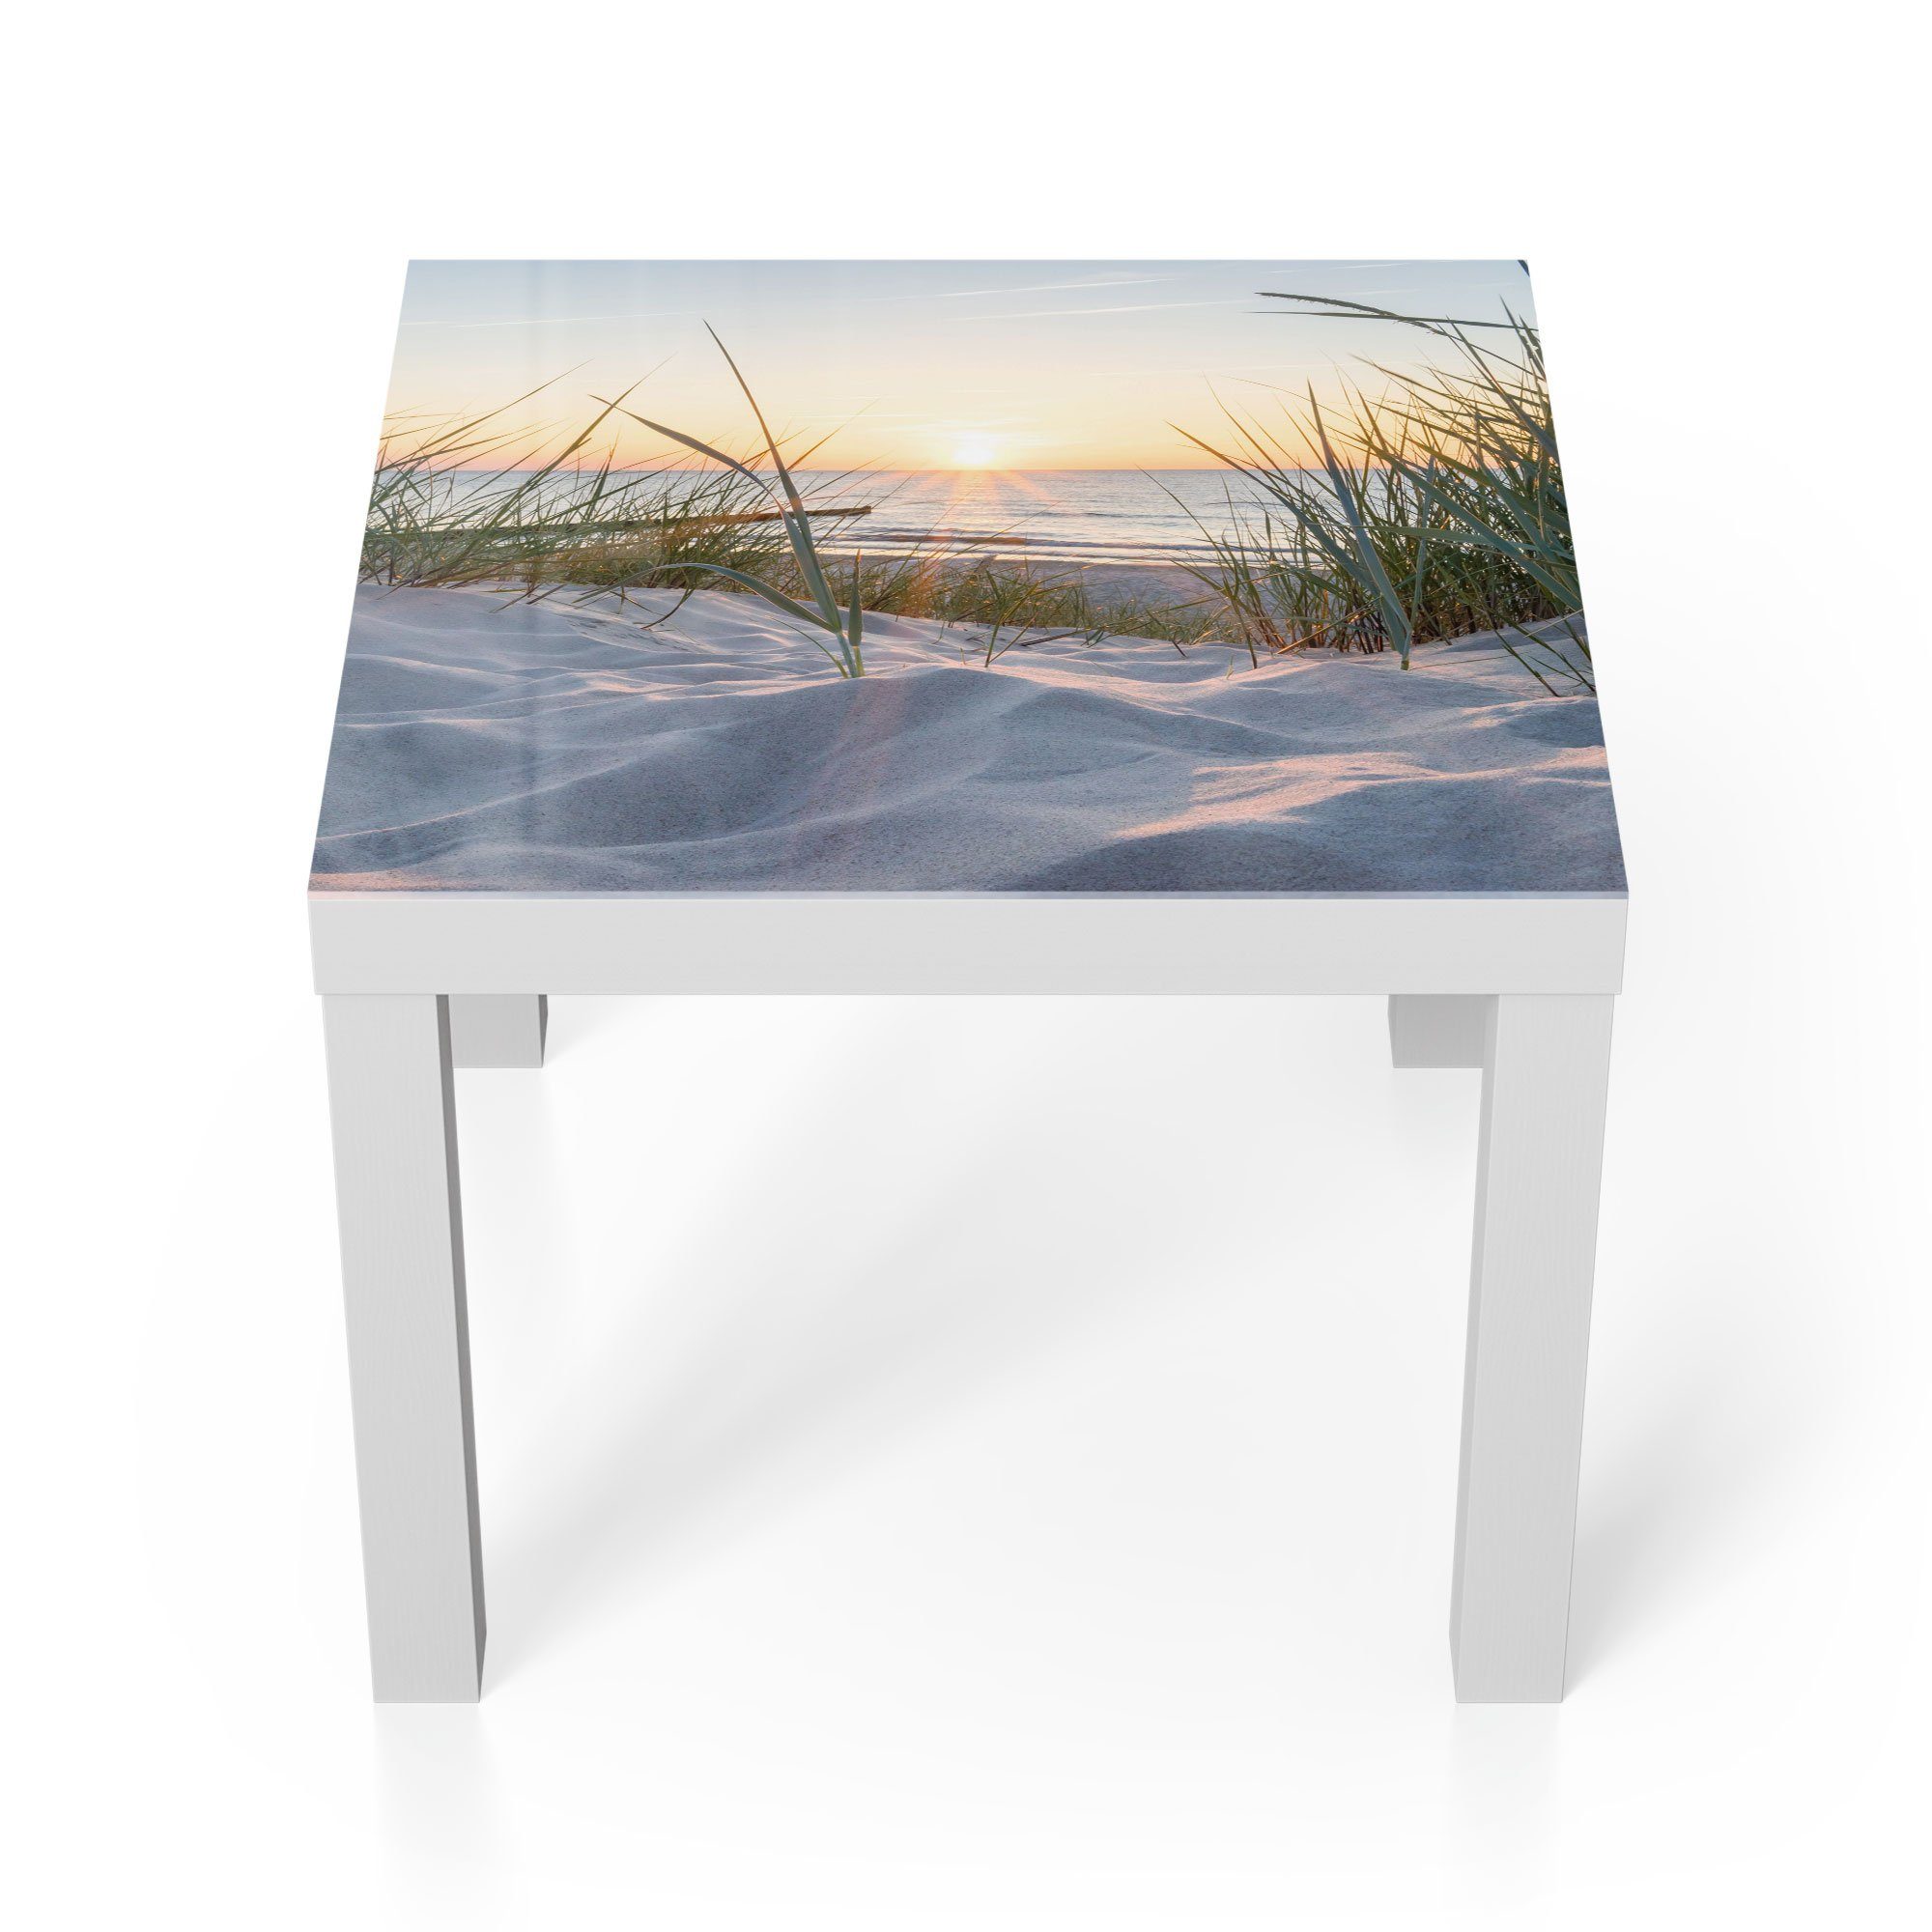 Sonnenuntergang', Glastisch Glas modern Weiß 'Ostsee DEQORI Beistelltisch Couchtisch